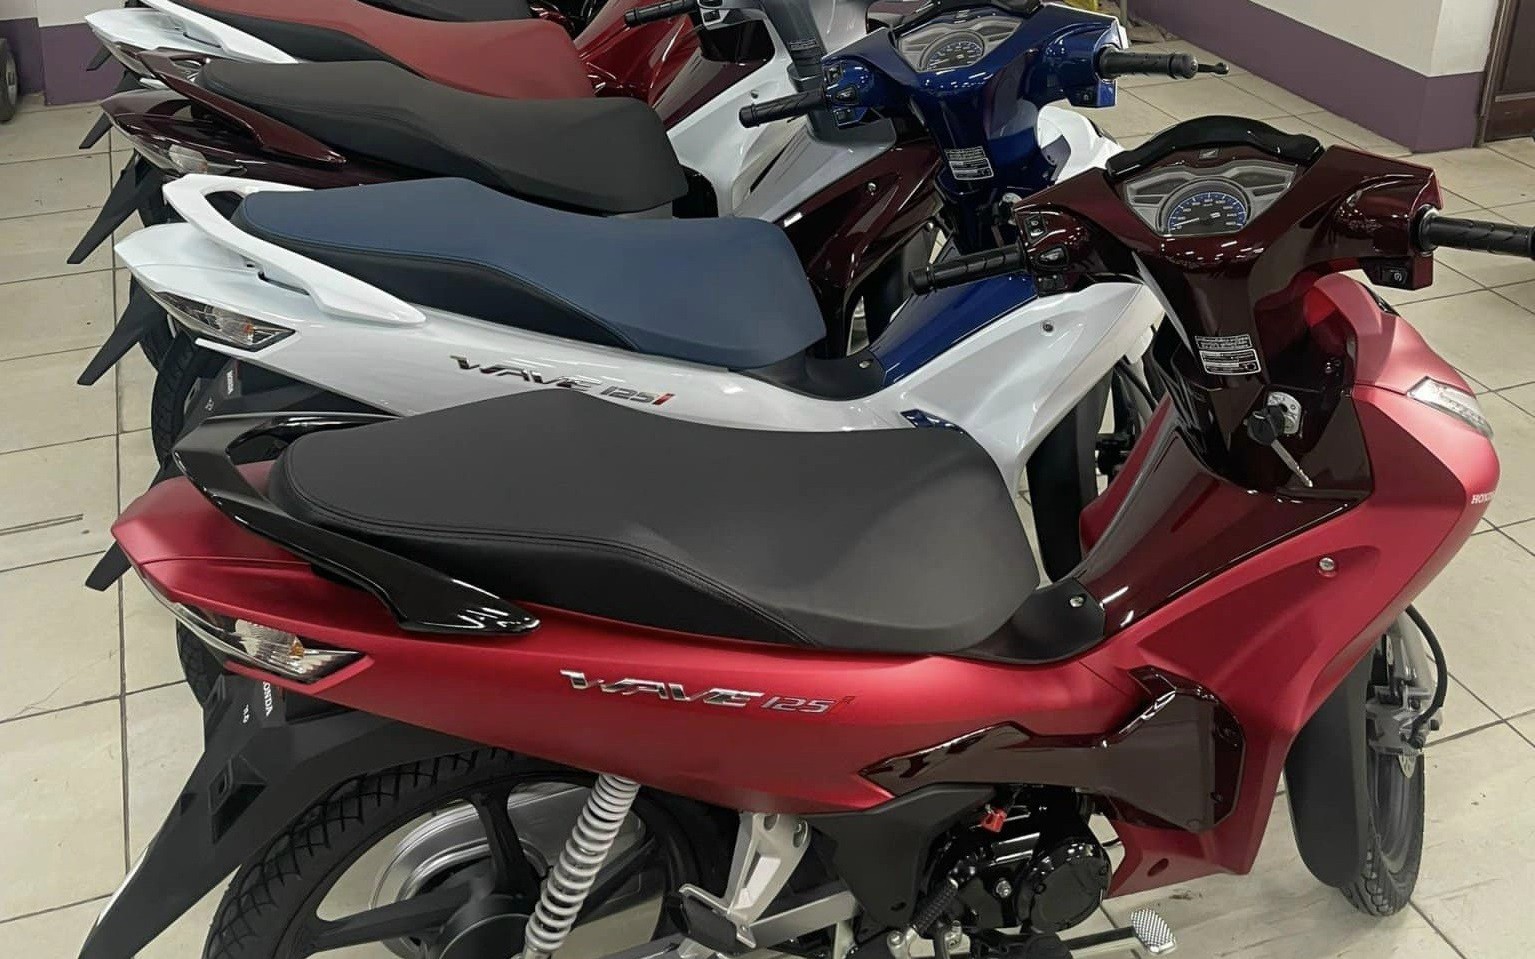 Xe số siêu xịn 125cc của Honda về Việt Nam có giá bao nhiêu khiến dân tình quên luôn Future?